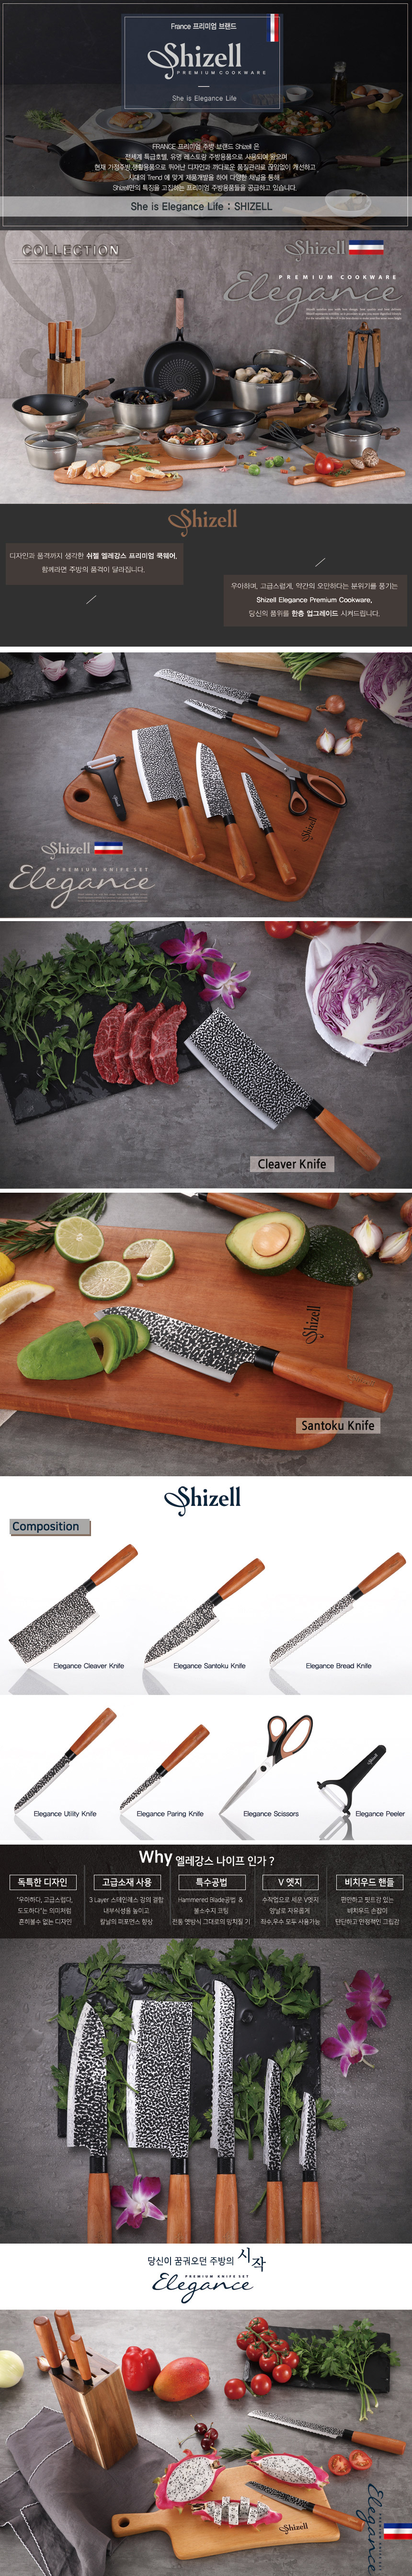 elegance knife main-1-1.jpg